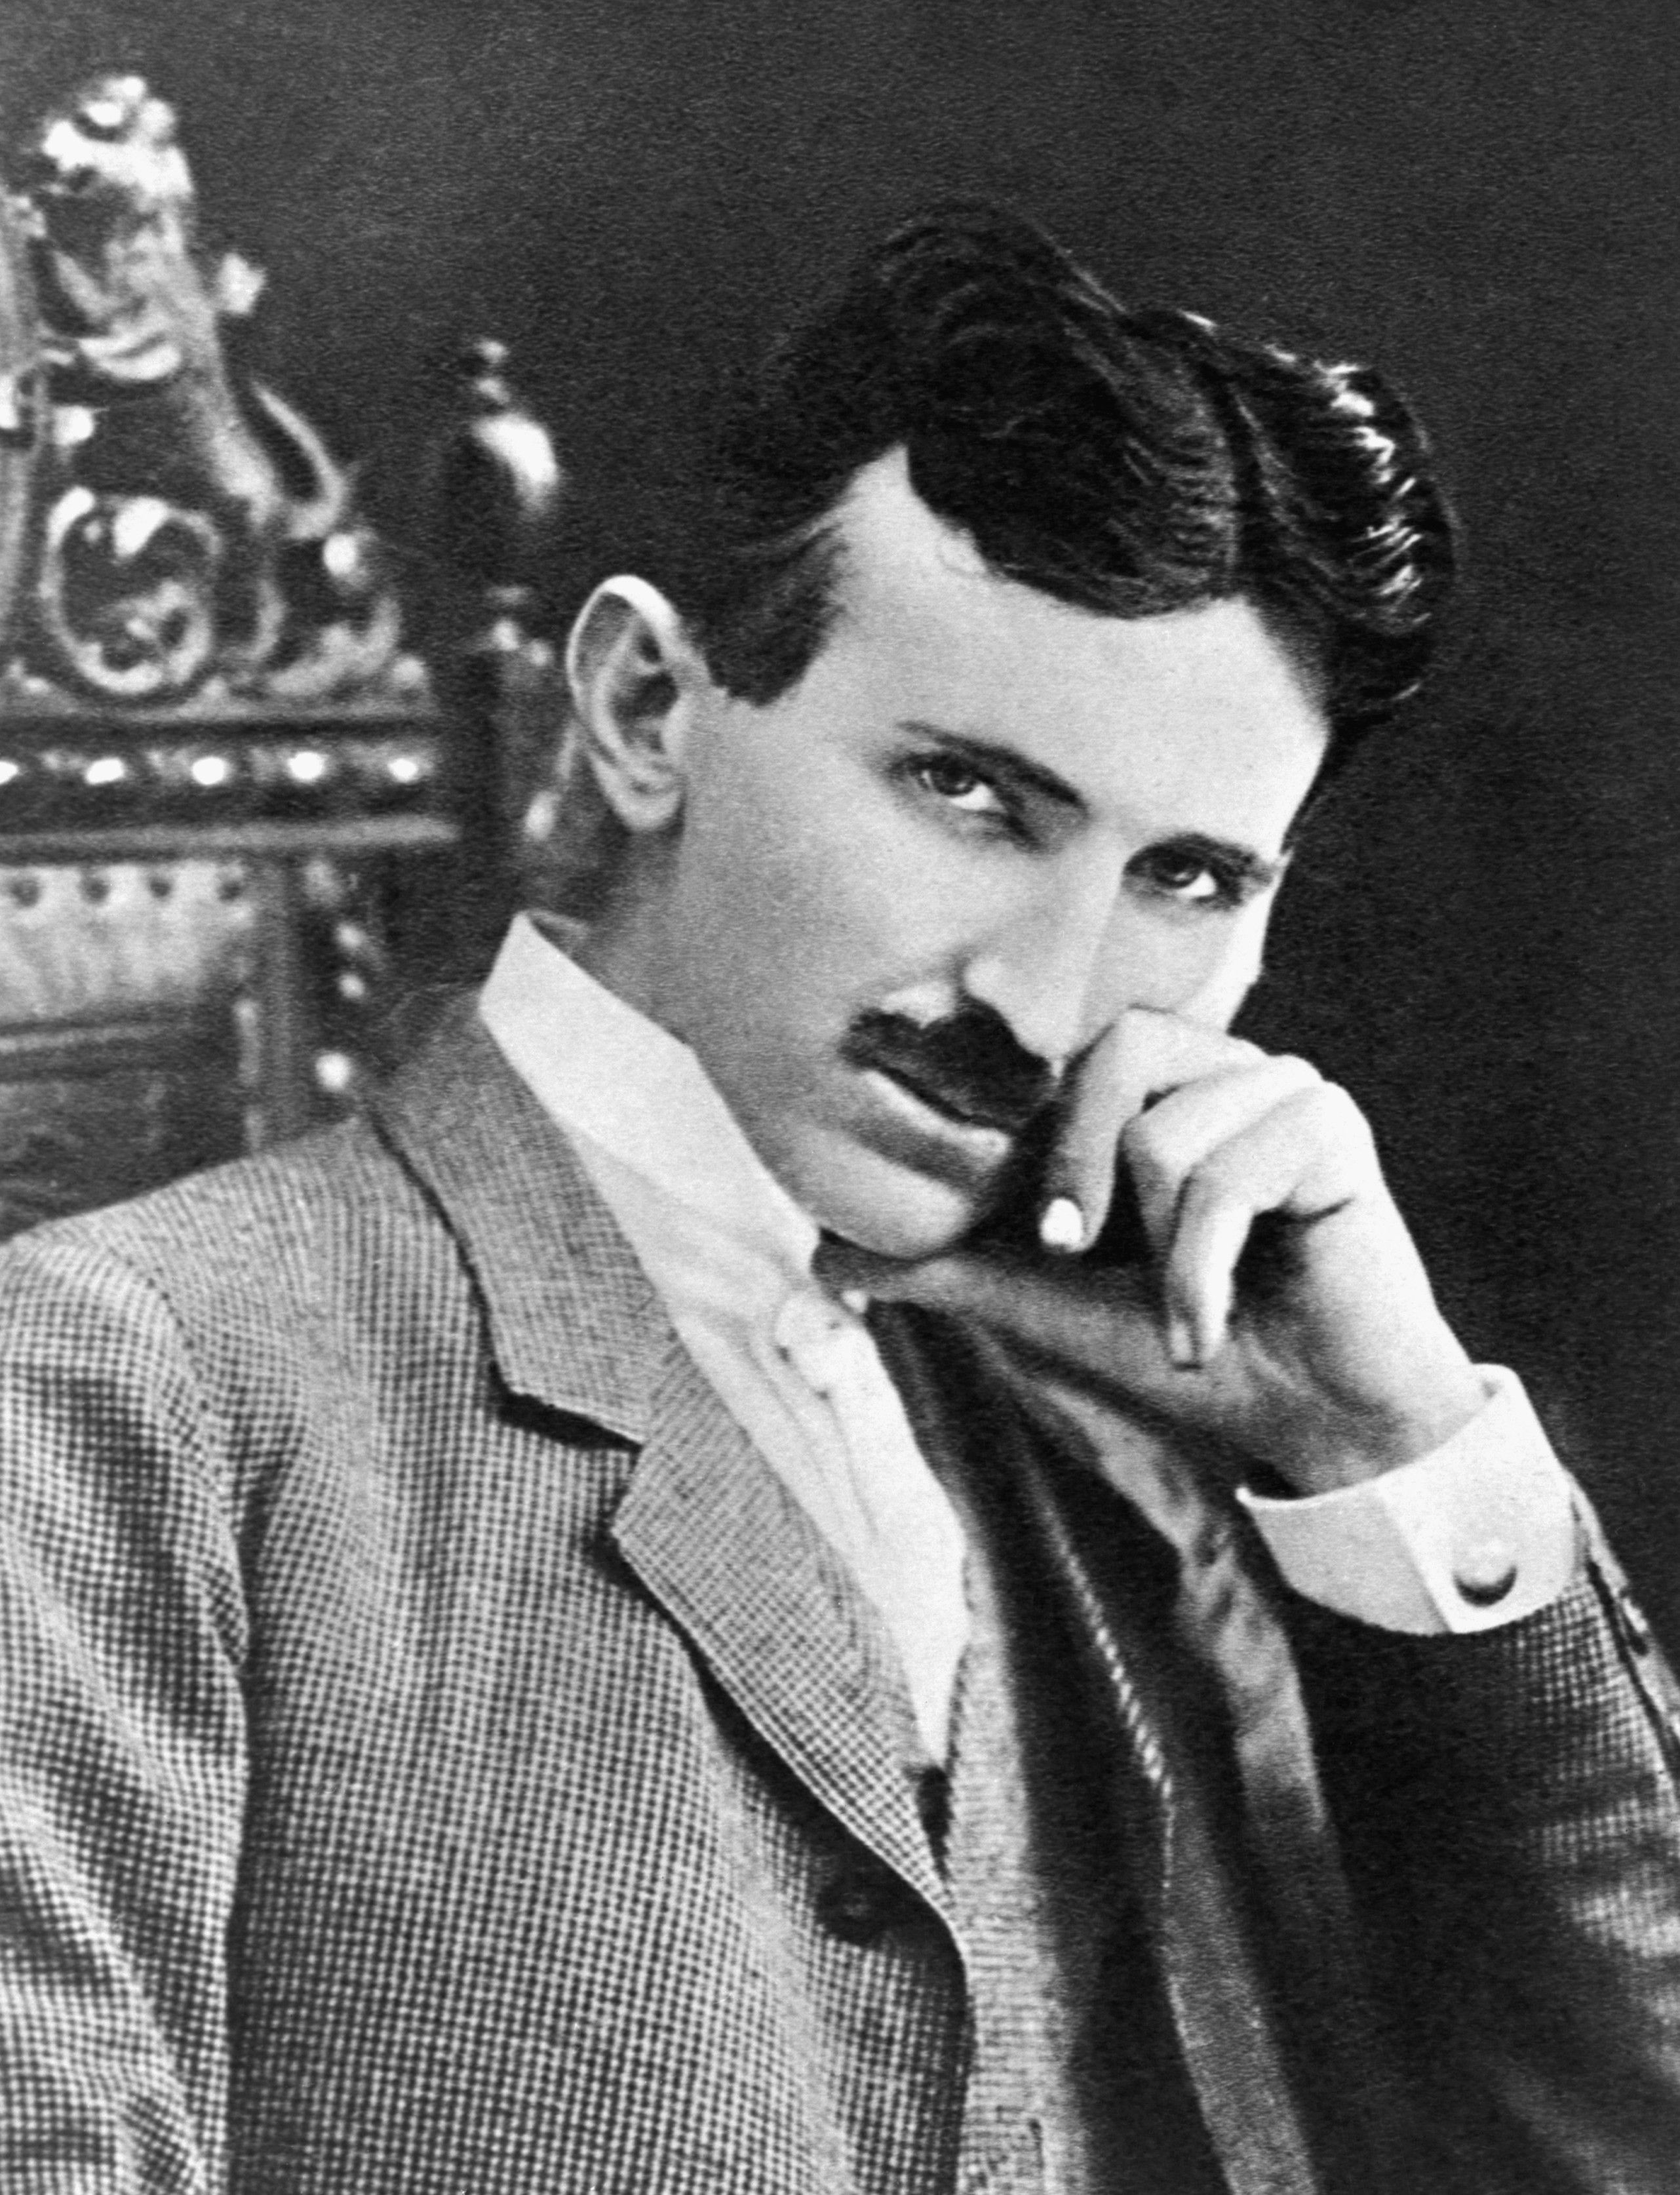 Nikola Tesla - Wikipedia, the free encyclopedia